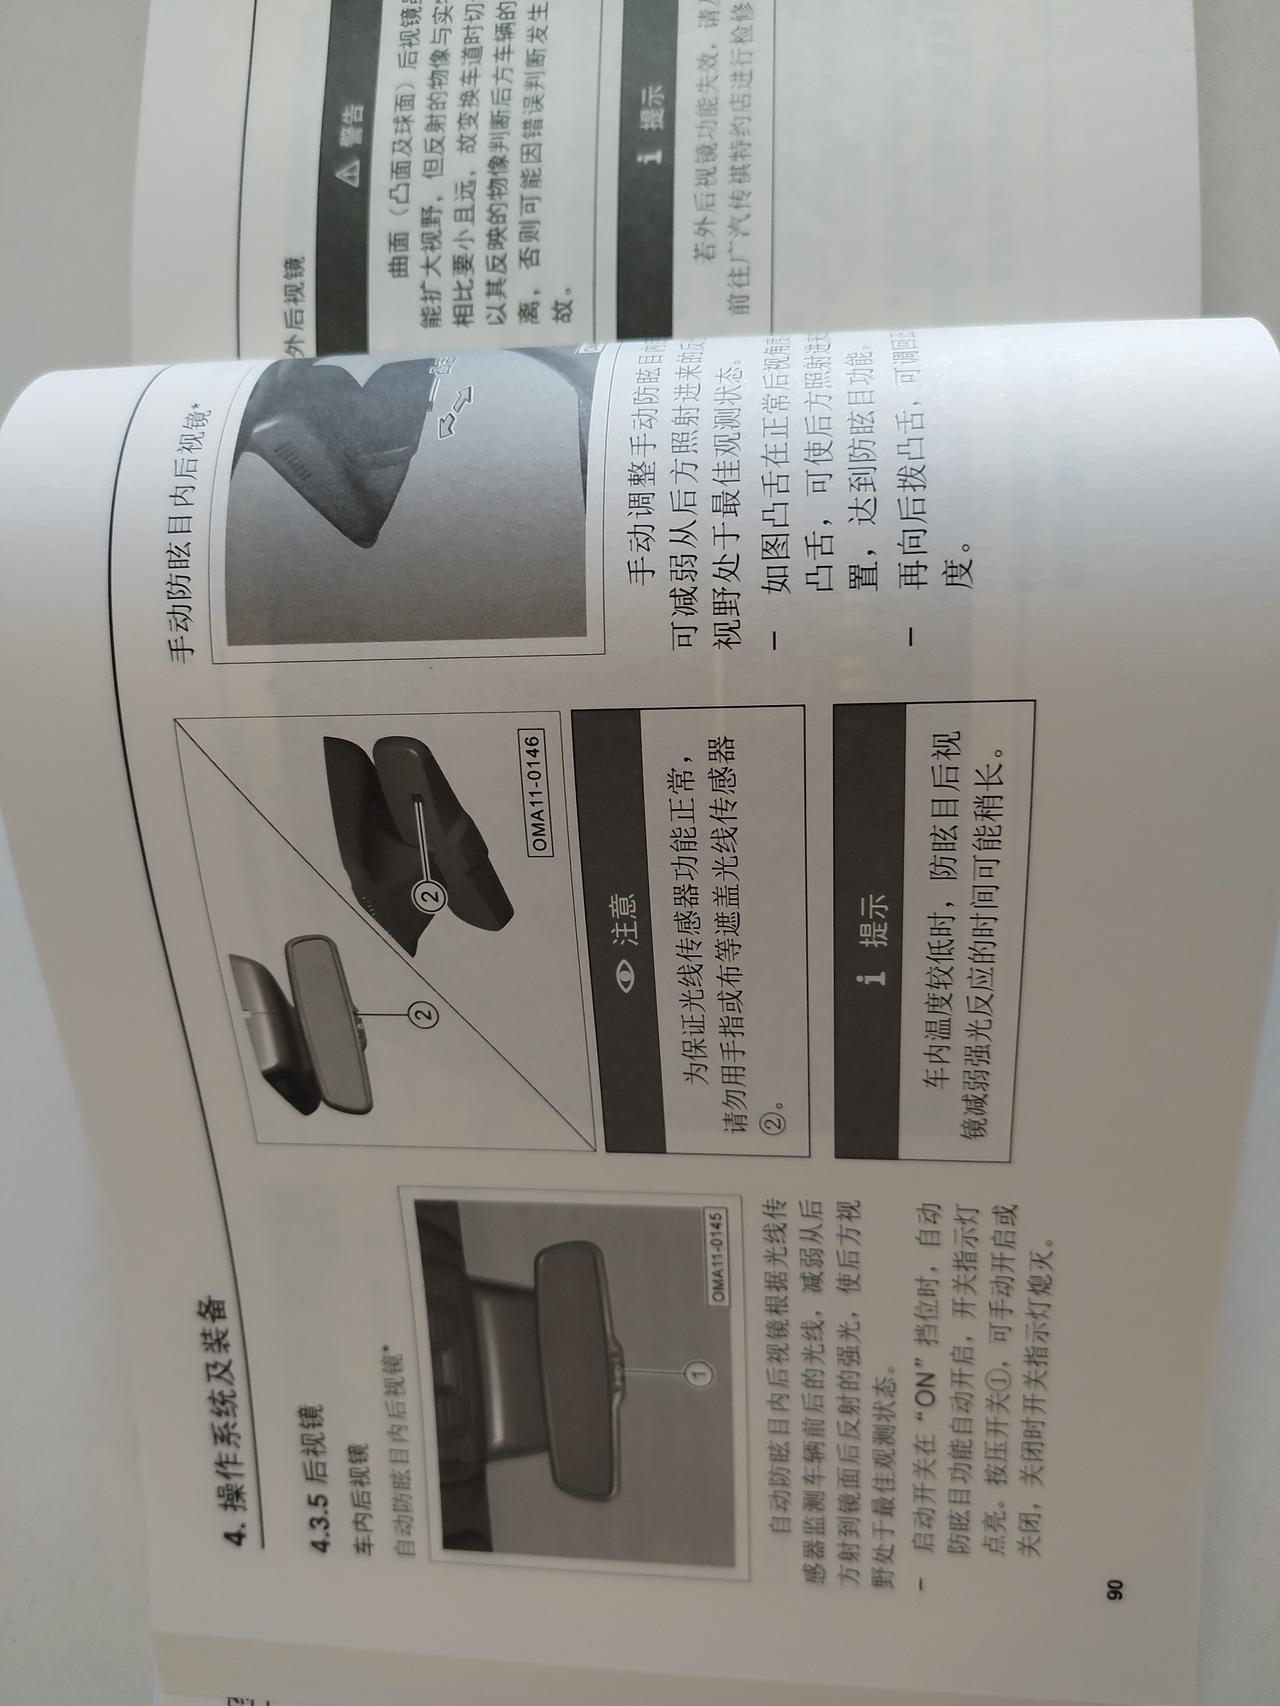 广汽传祺传祺GS4 PLUS 星际的车内后视镜怎么调节呀 用户手册只有自动防炫目开关